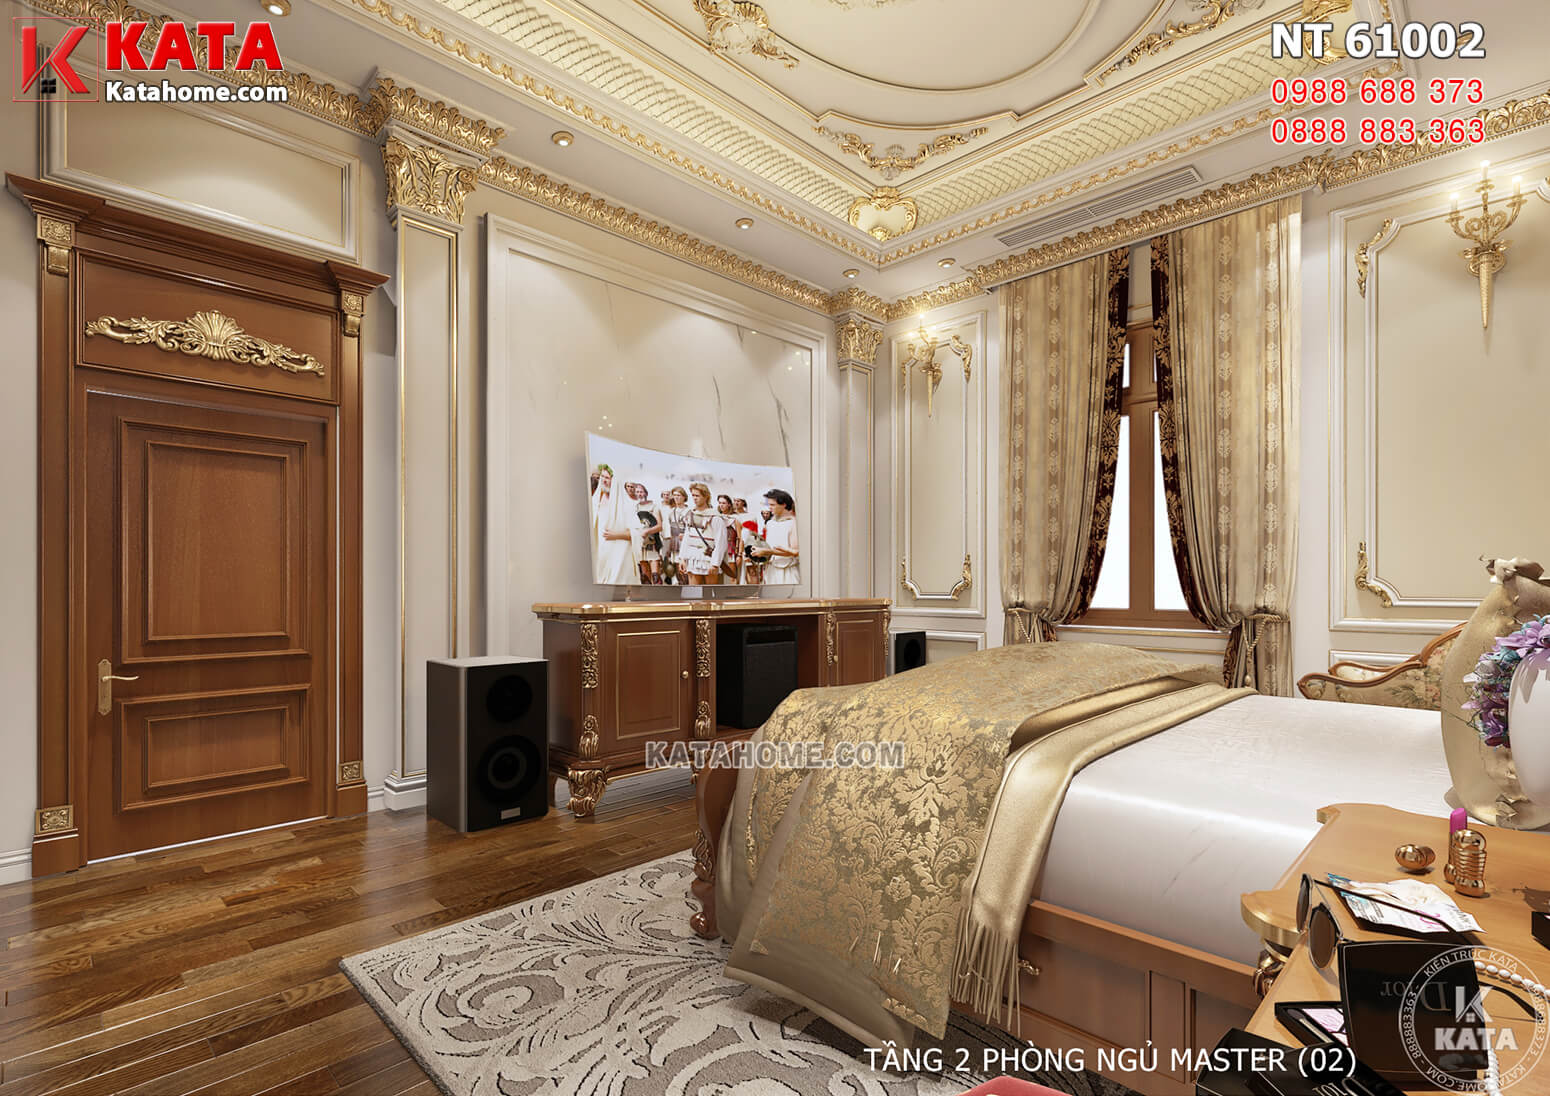 Hình ảnh: Không gian nội thất phòng ngủ Master mang vẻ đẹp tân cổ điển ấn tượng